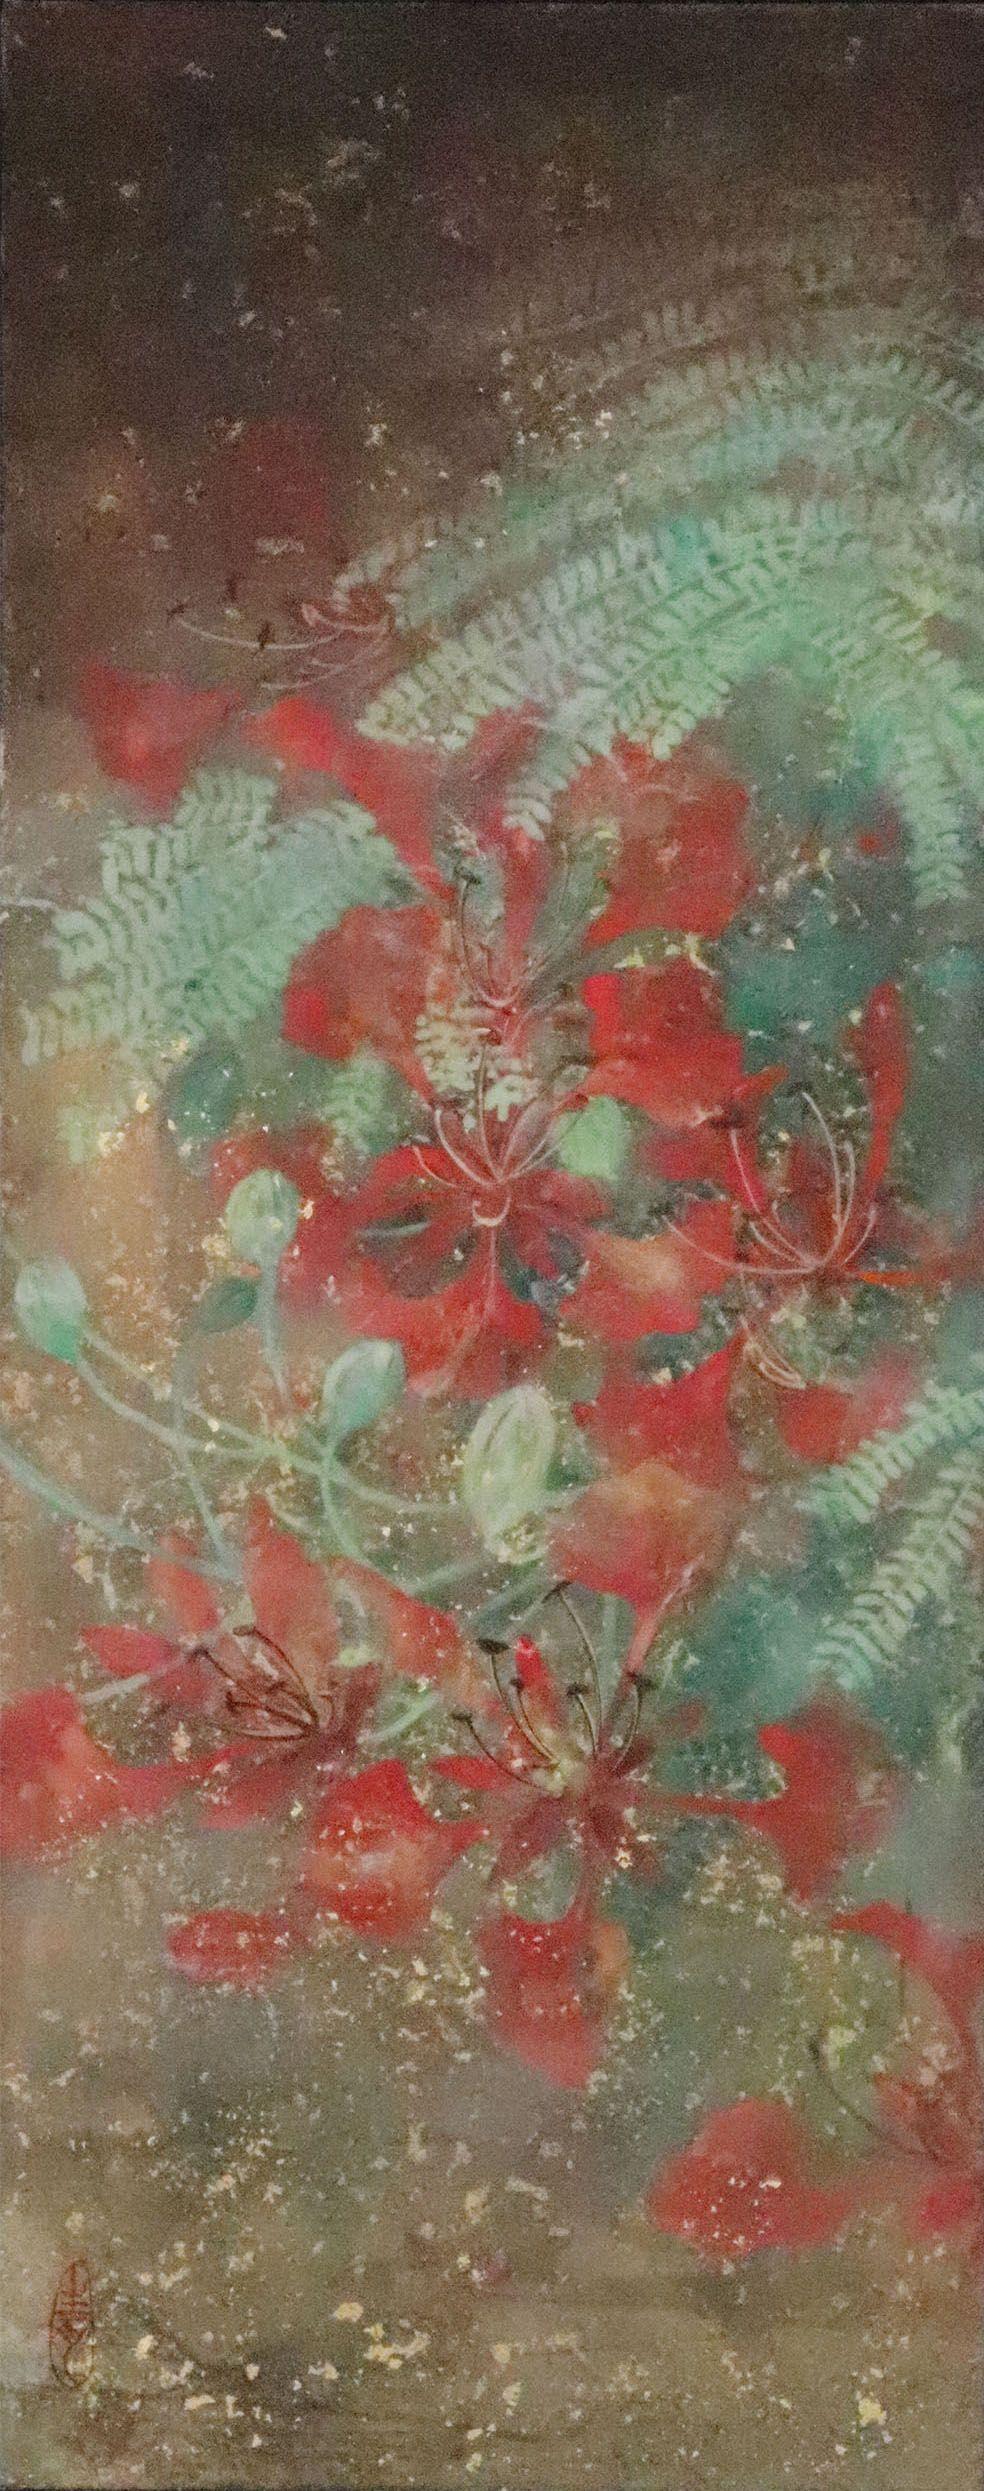 Sommer II von Chen Yiching - Zeitgenössische Nihonga-Malerei, Blumen, Nature